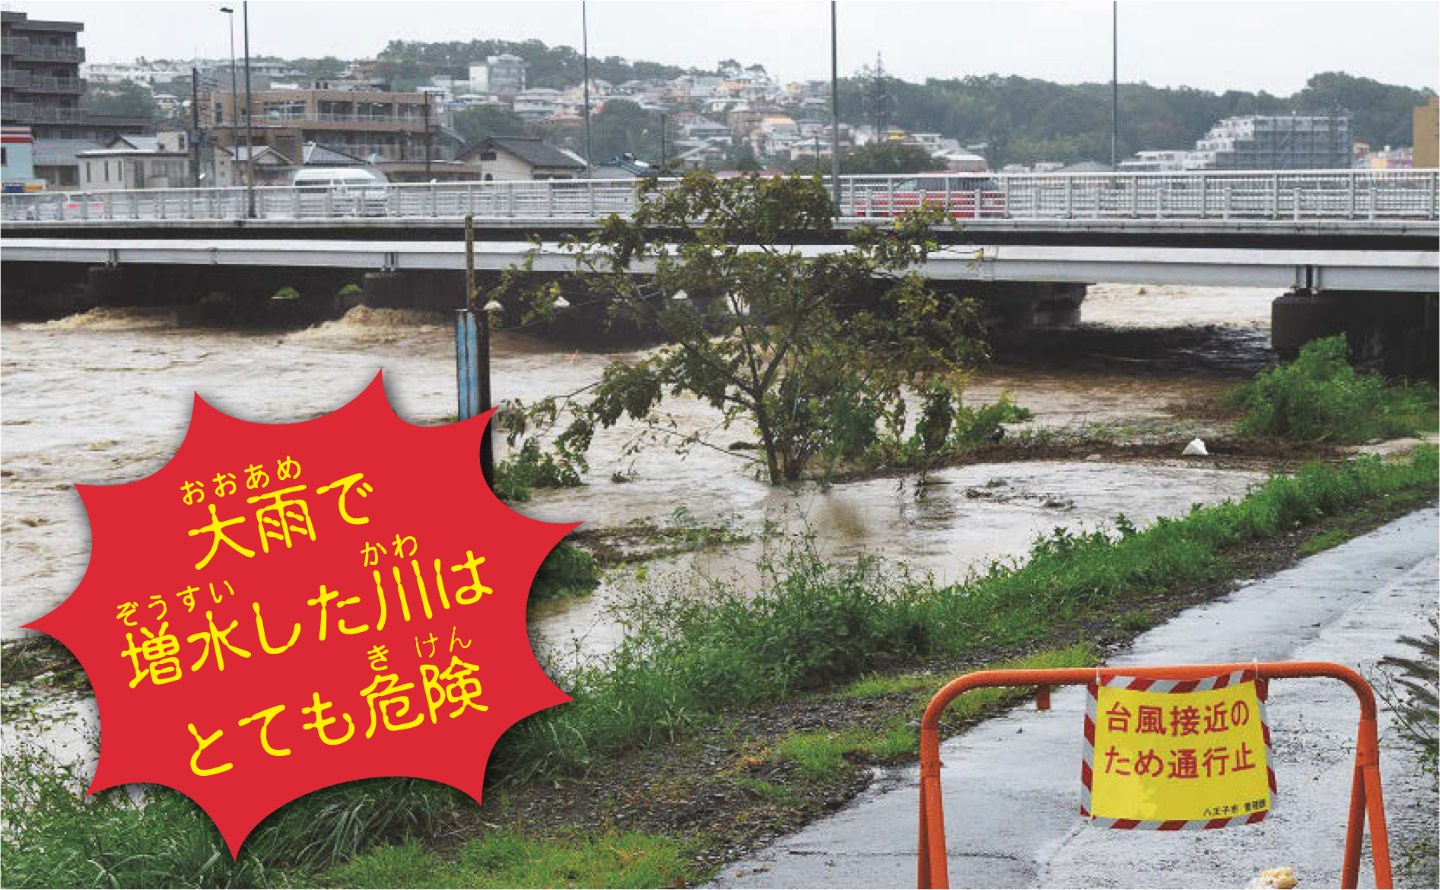 大雨で増水した川はとても危険